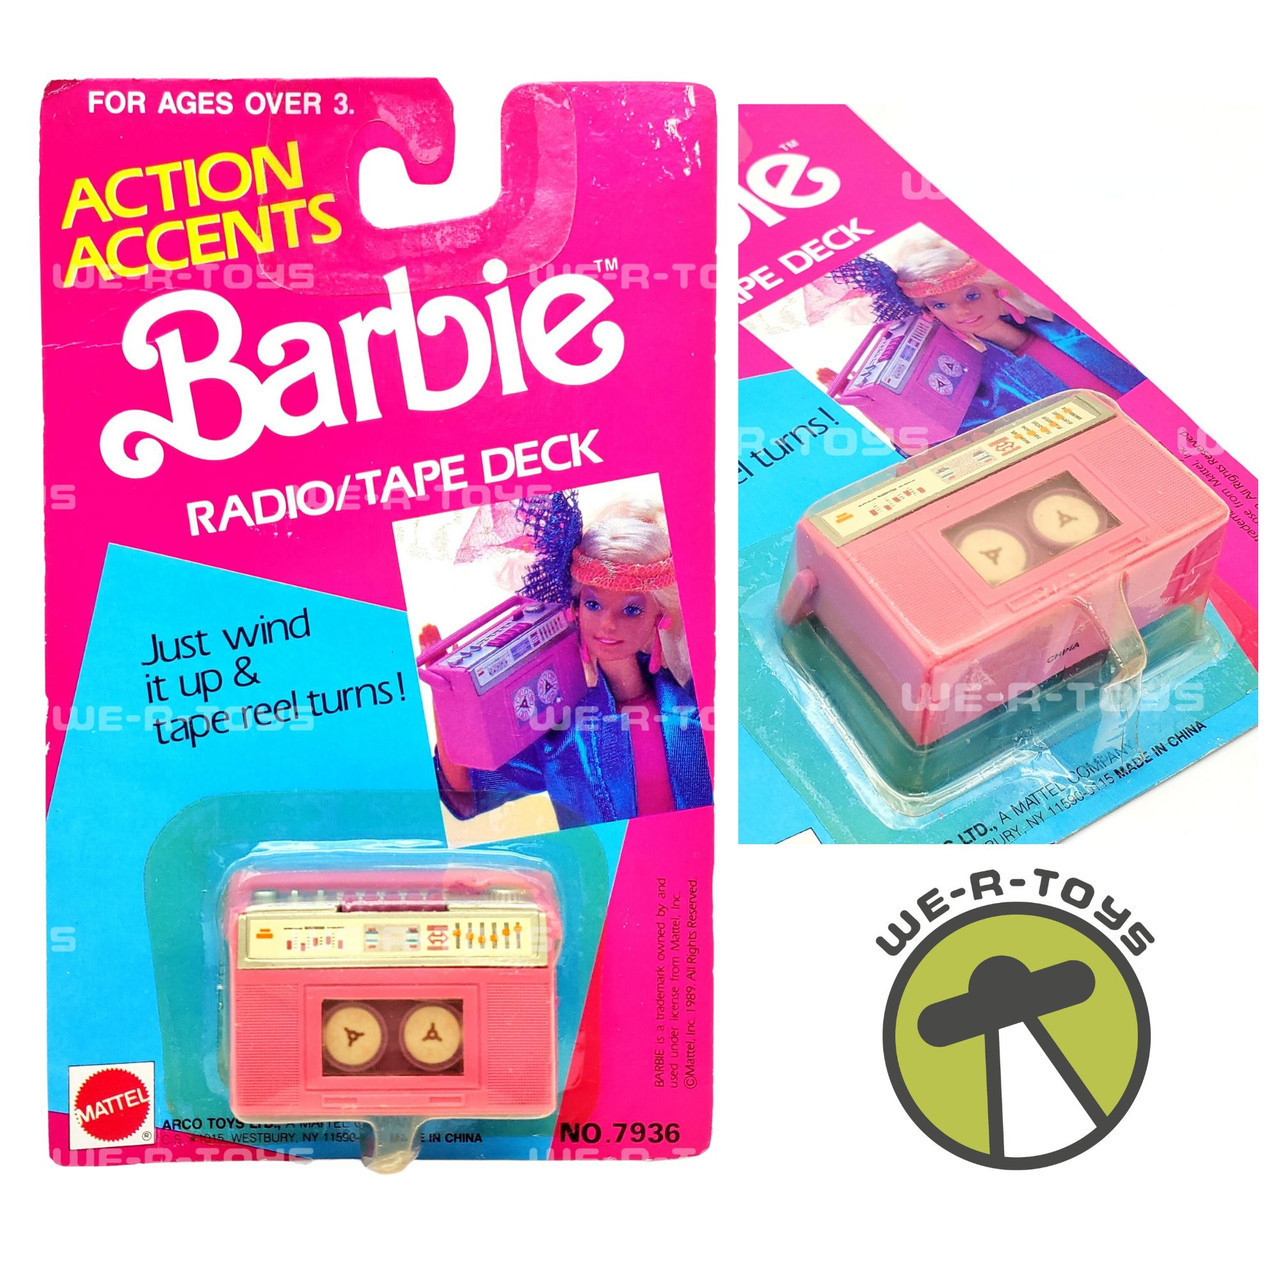 Mattel Vintage 1990s Pink Barbie Walkie-talkie Toy Phones 